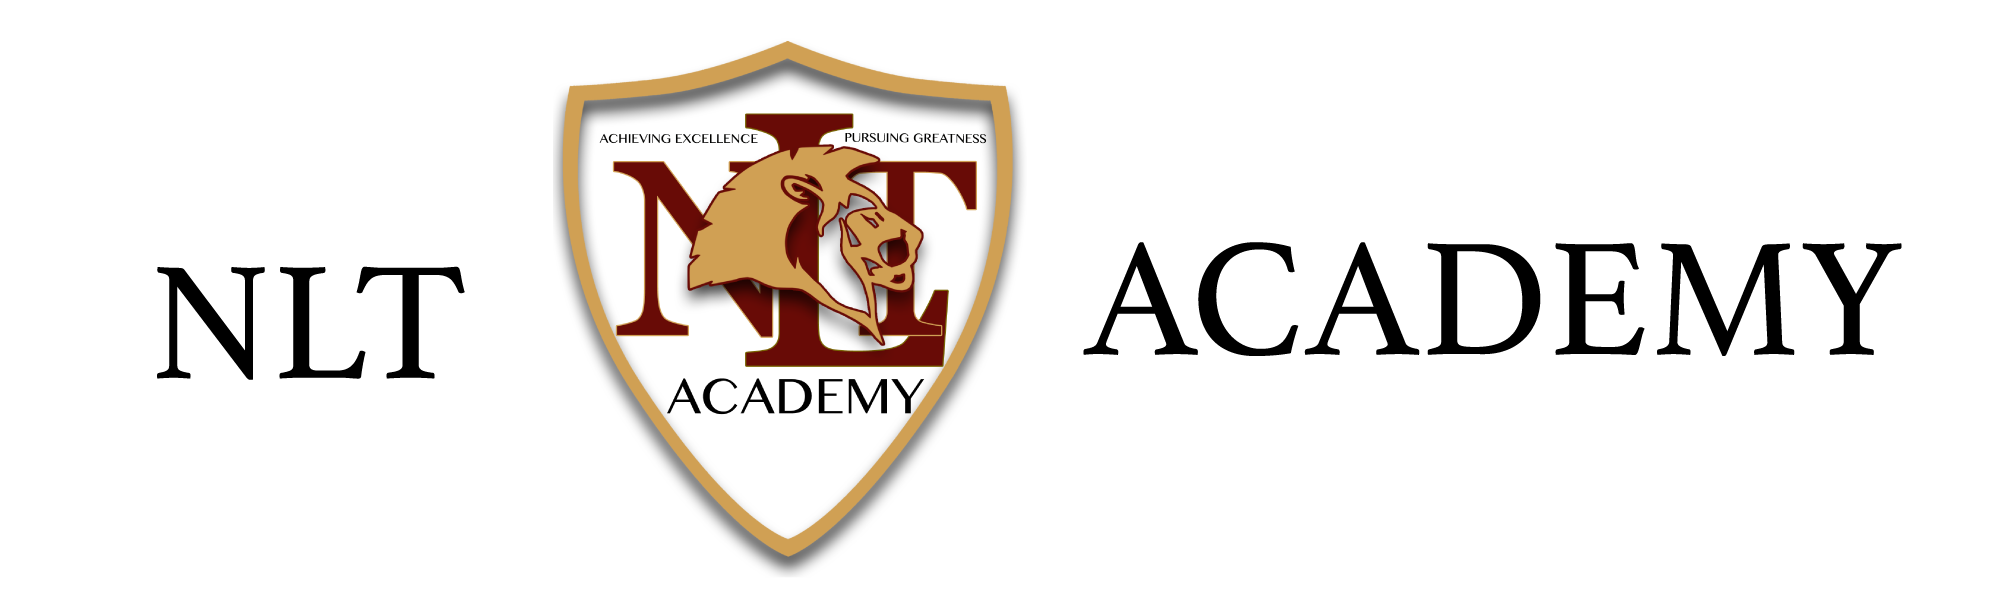 NLT Academy